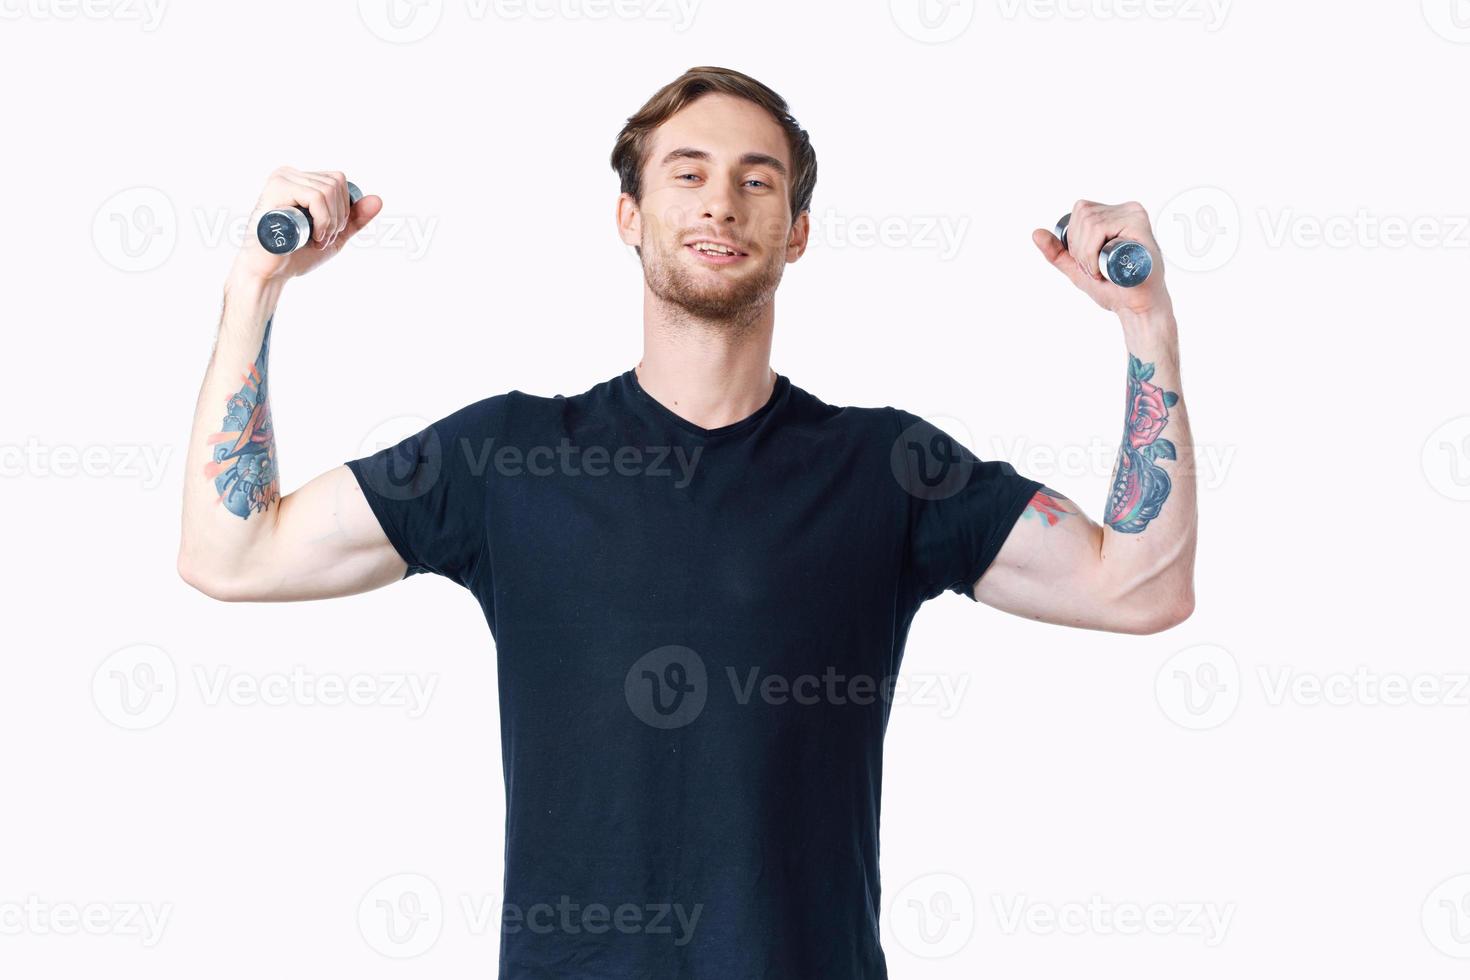 homem com halteres músculos músculos fisiculturista ginástica e tatuagem em dele braço foto